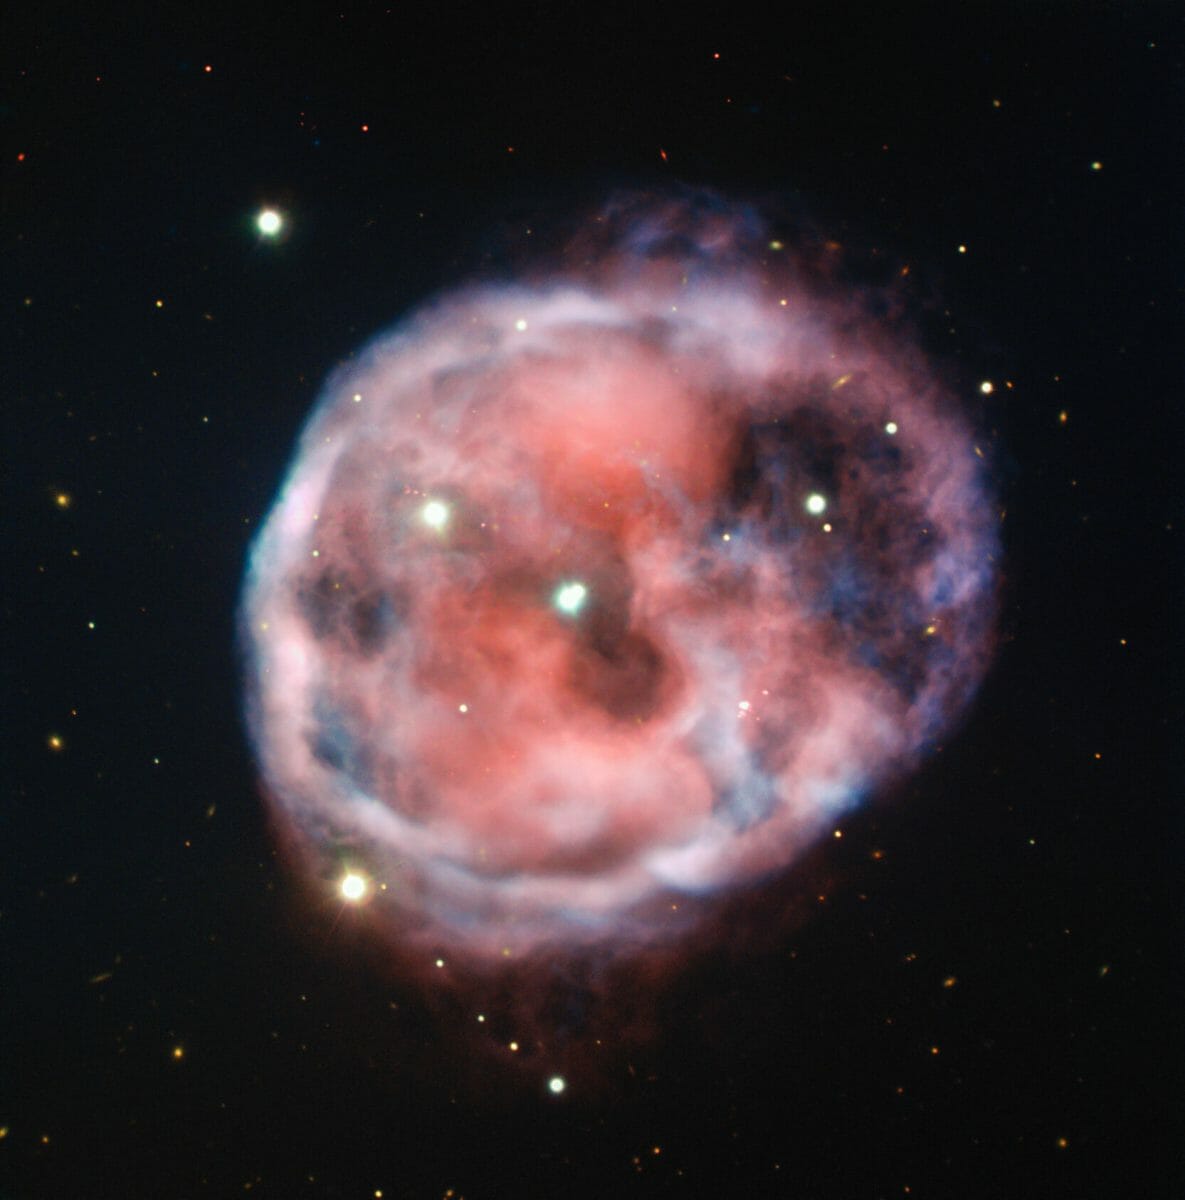 「どくろ星雲」こと惑星状星雲「NGC 246」